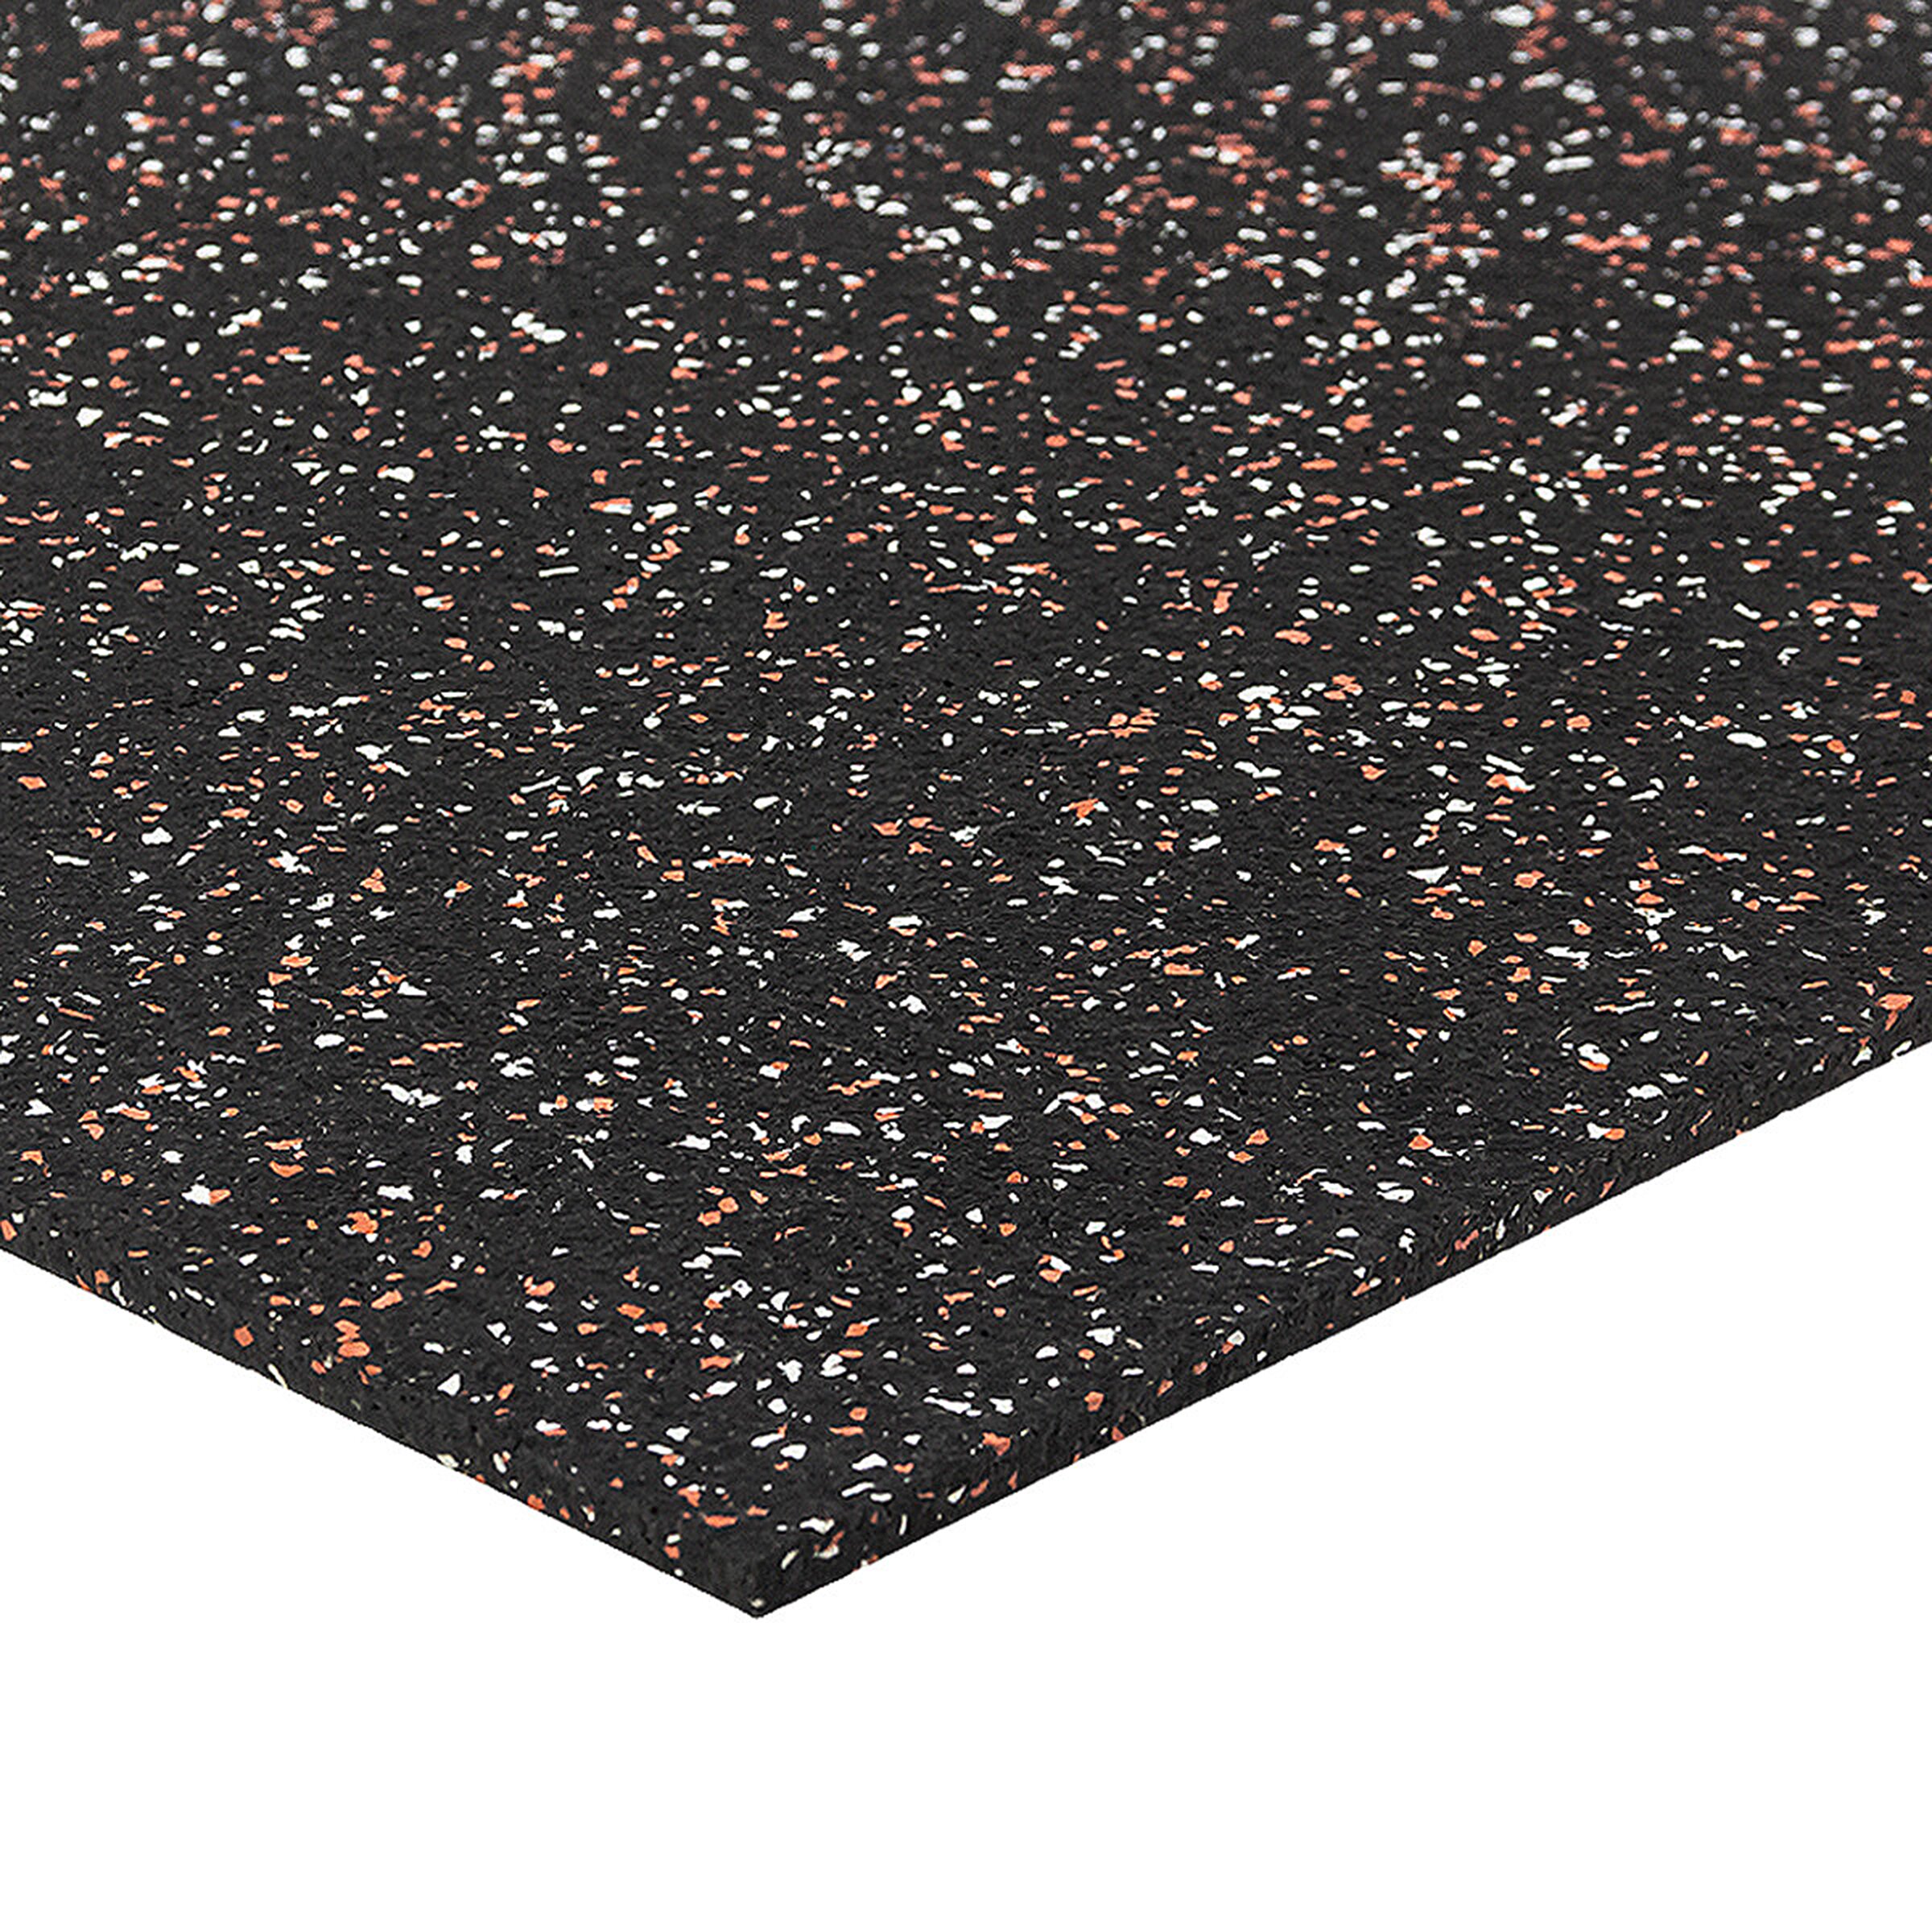 Černo-bílo-červená podlahová guma FLOMA FitFlo SF1050 - délka 100 cm, šířka 100 cm, výška 0,8 cm